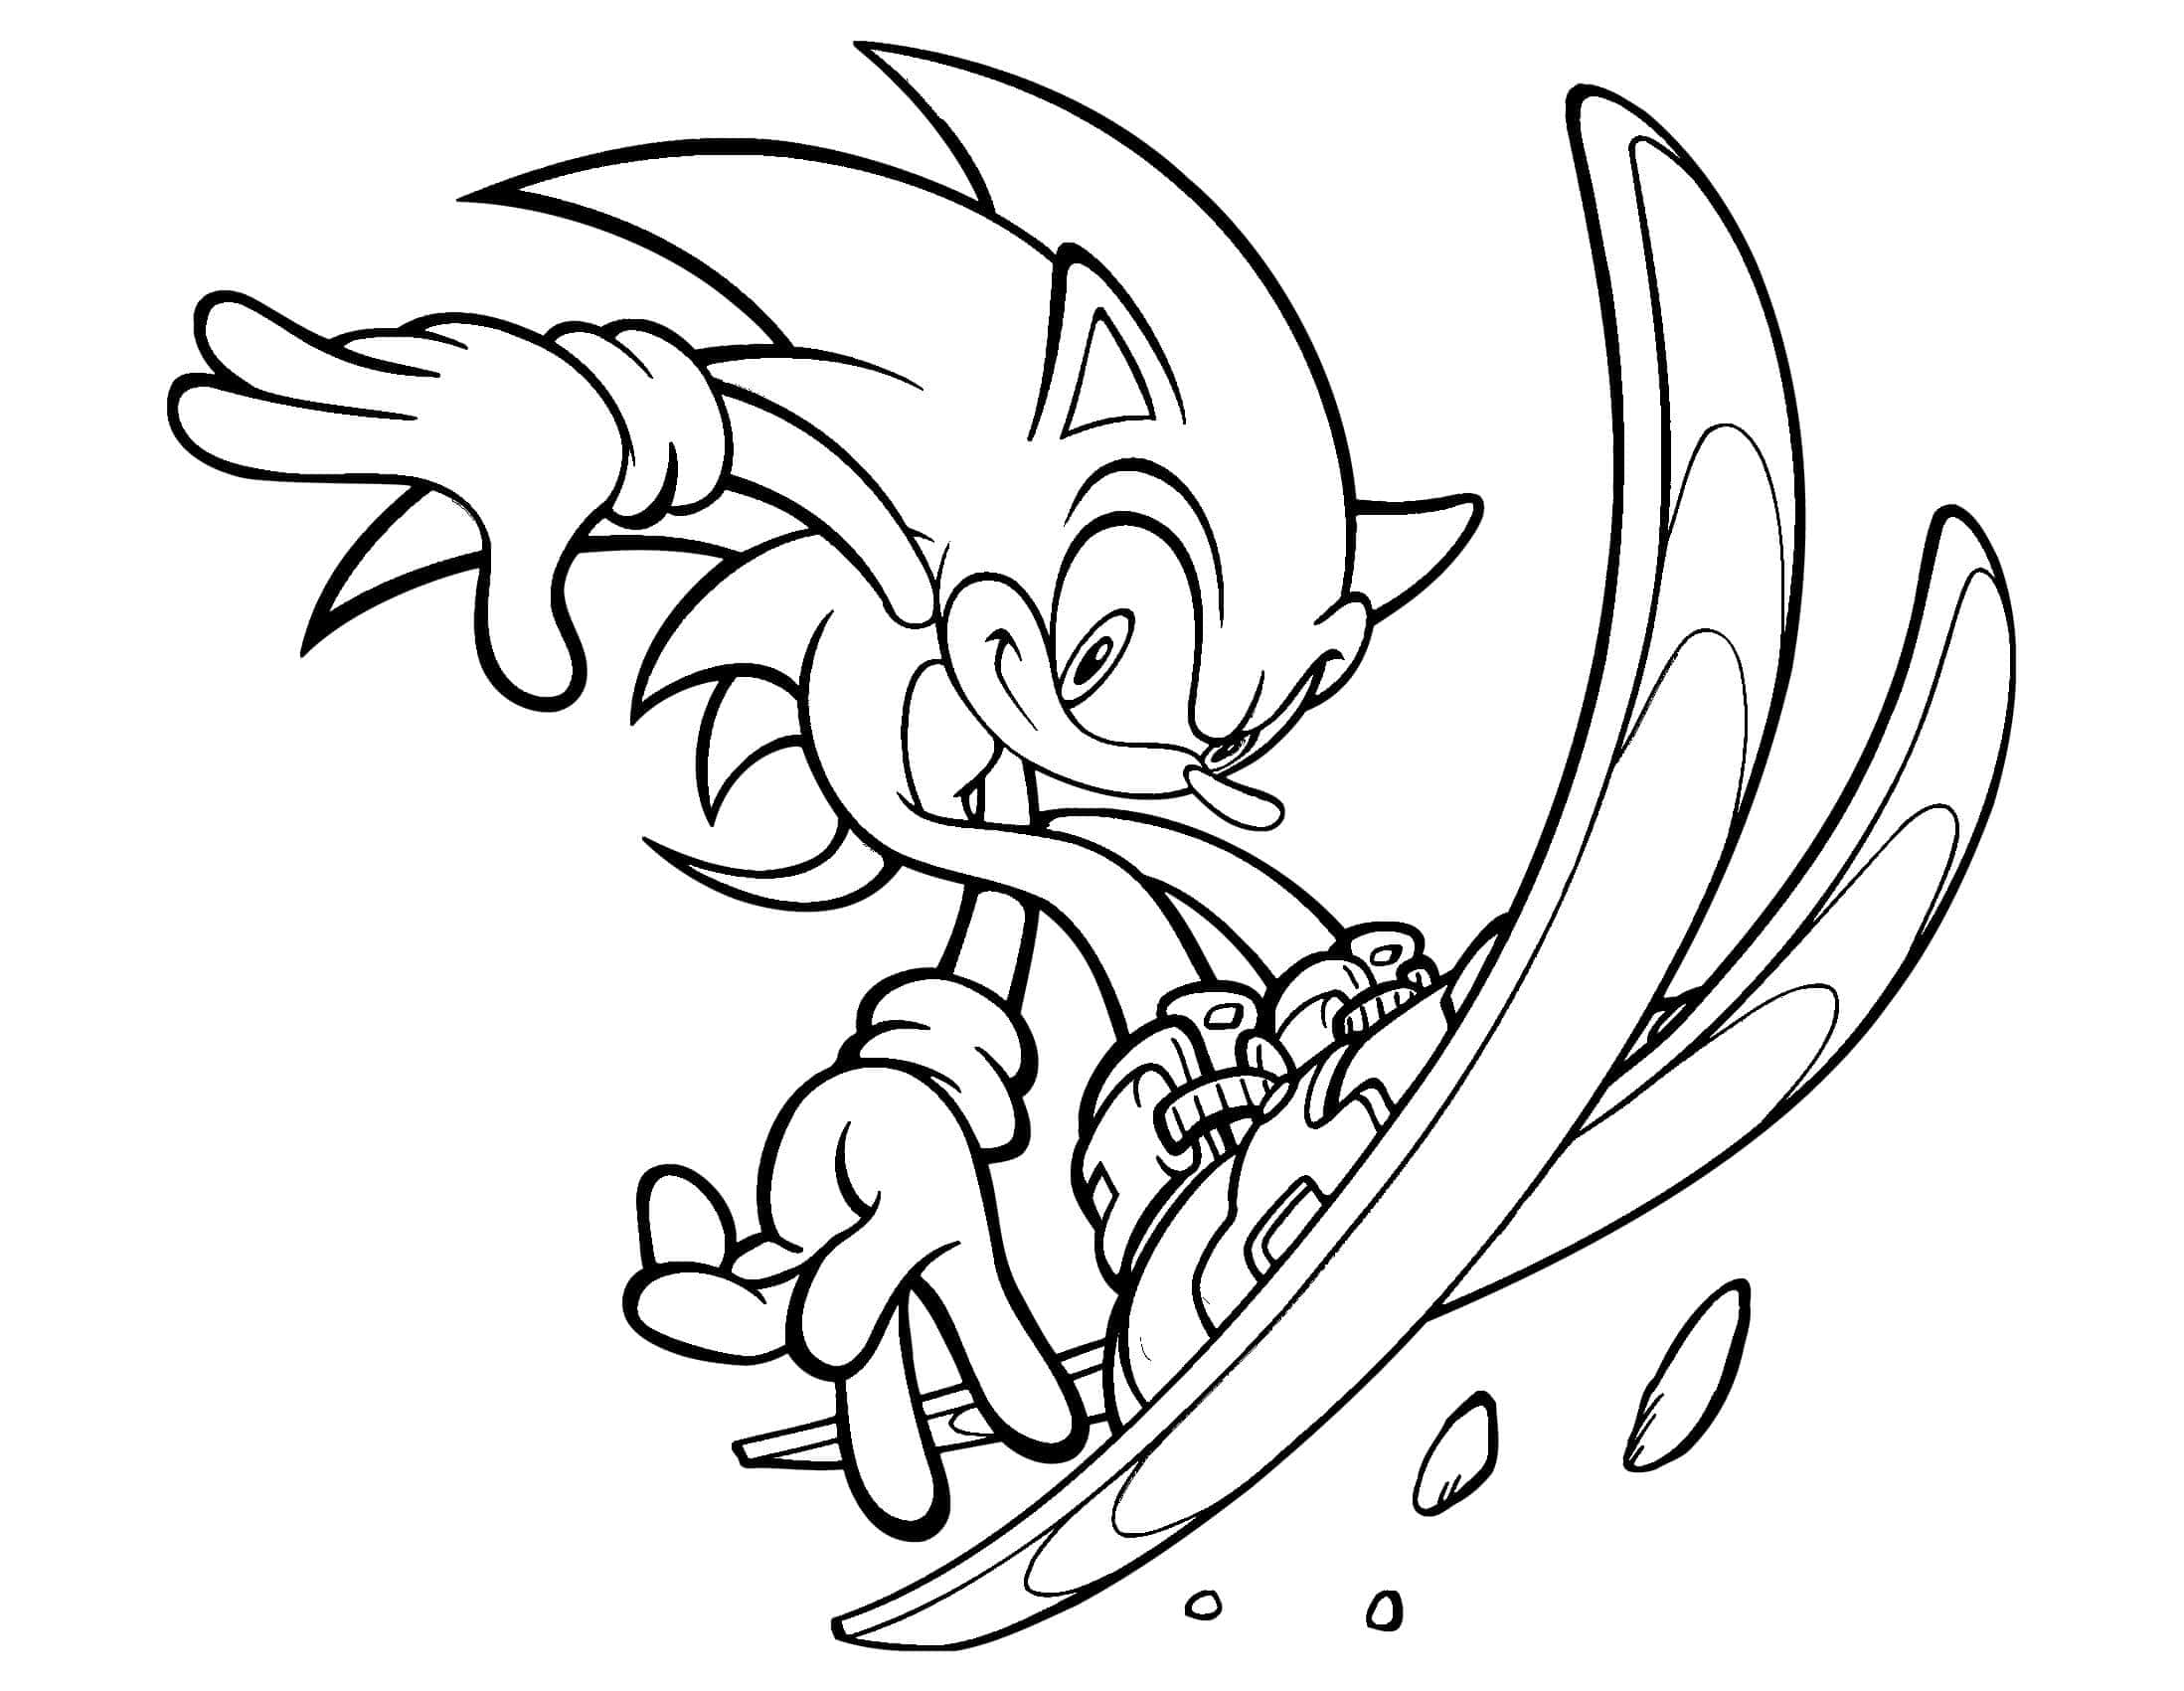 Página para colorir divertida do Sonic the Hedgehog para imprimir e colorir